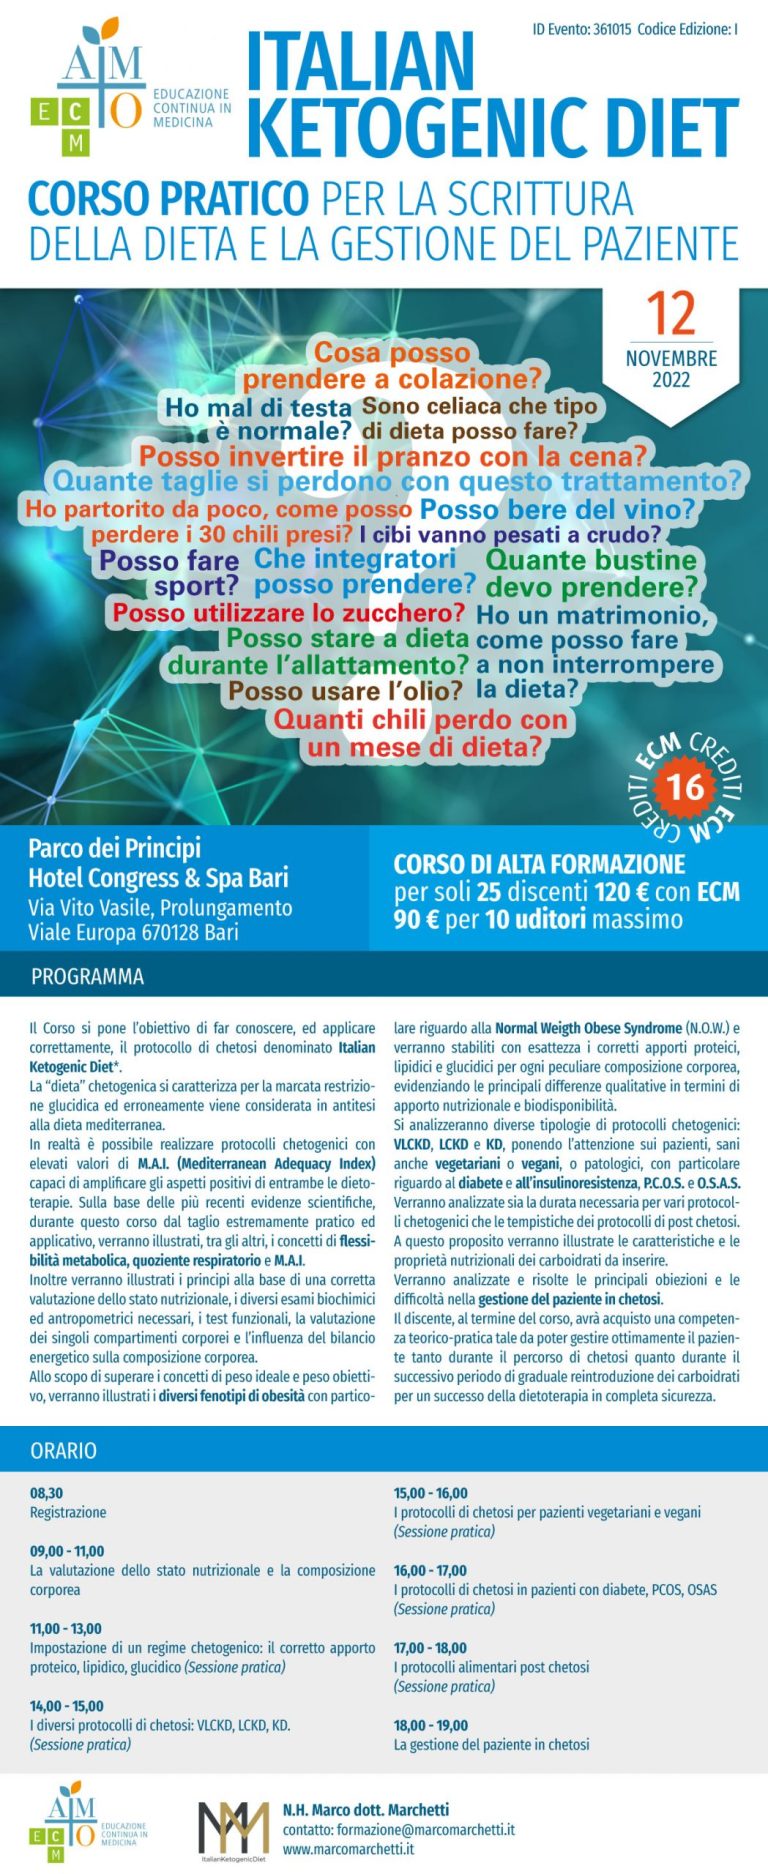 Corso ECM: 16 crediti ECM – 12 Novembre Bari